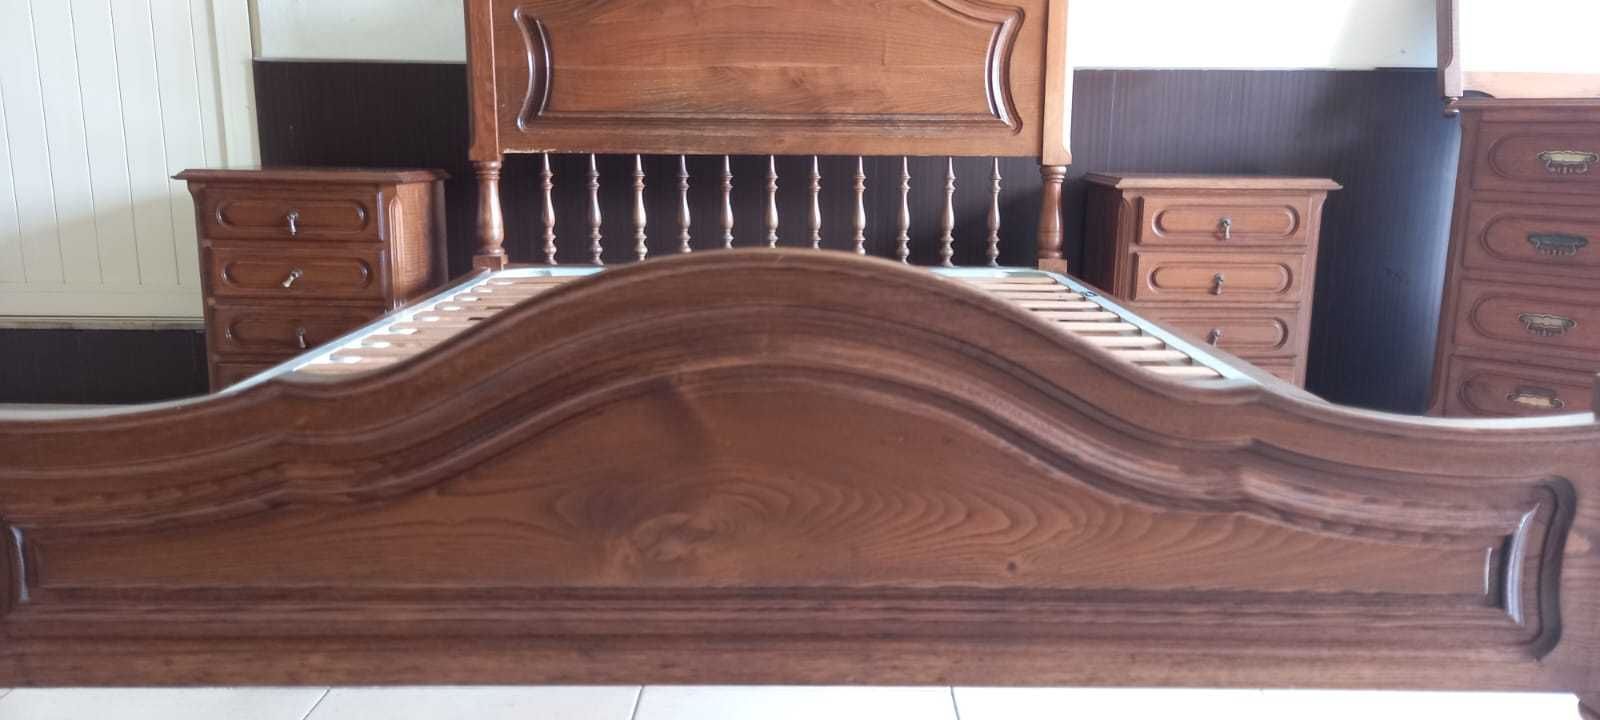 Mobília de quarto Casal completo em madeira maciça